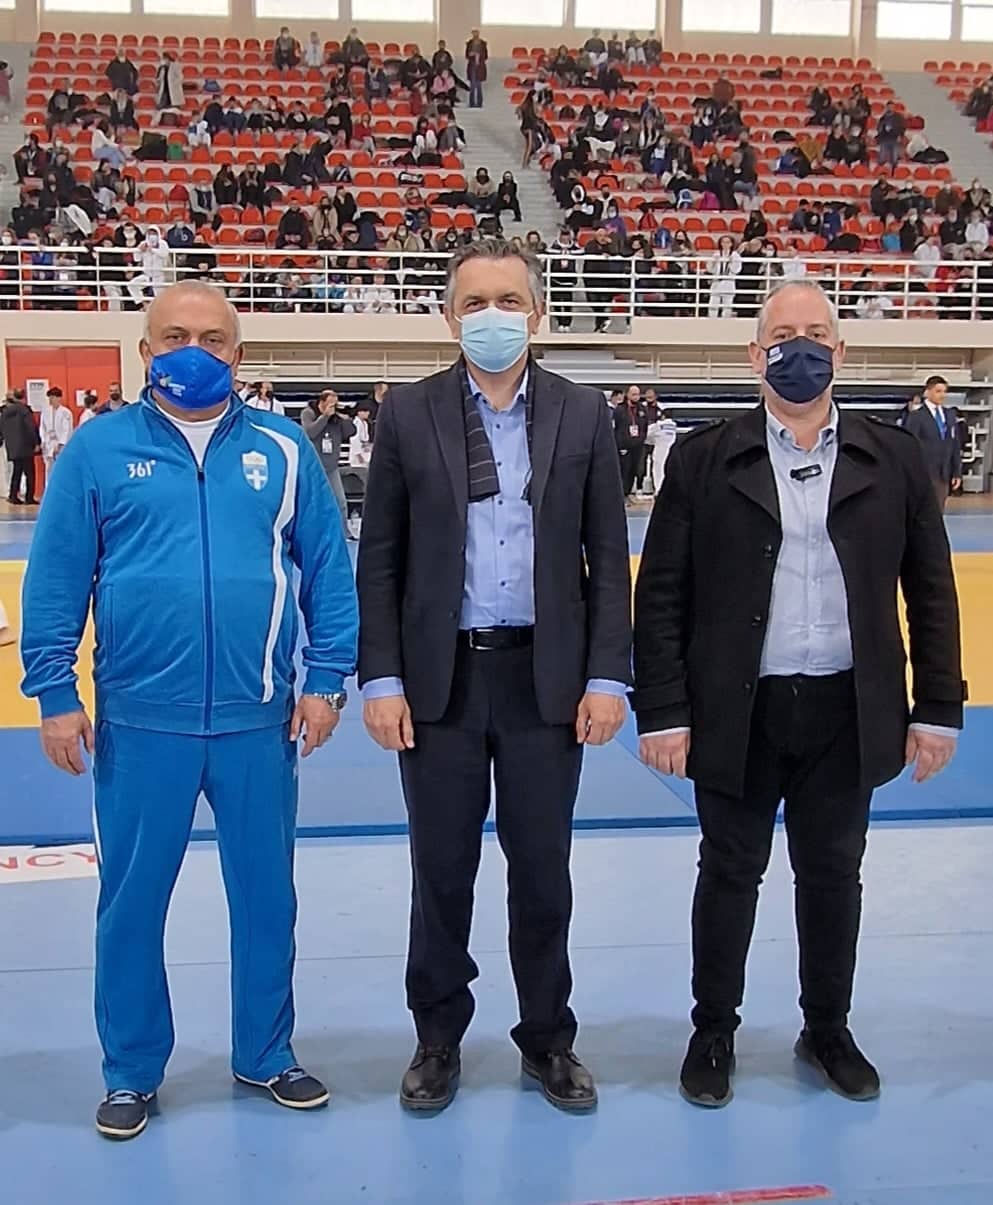 Με επιτυχία διεξήχθη το Πανελλήνιο Πρωτάθλημα judo παίδων και κορασίδων στην Κοζάνη – Το ‘παρών’ στους αγώνες έδωσε ο Περιφερειάρχης Δυτικής Μακεδονίας Γιώργος Κασαπίδης 1